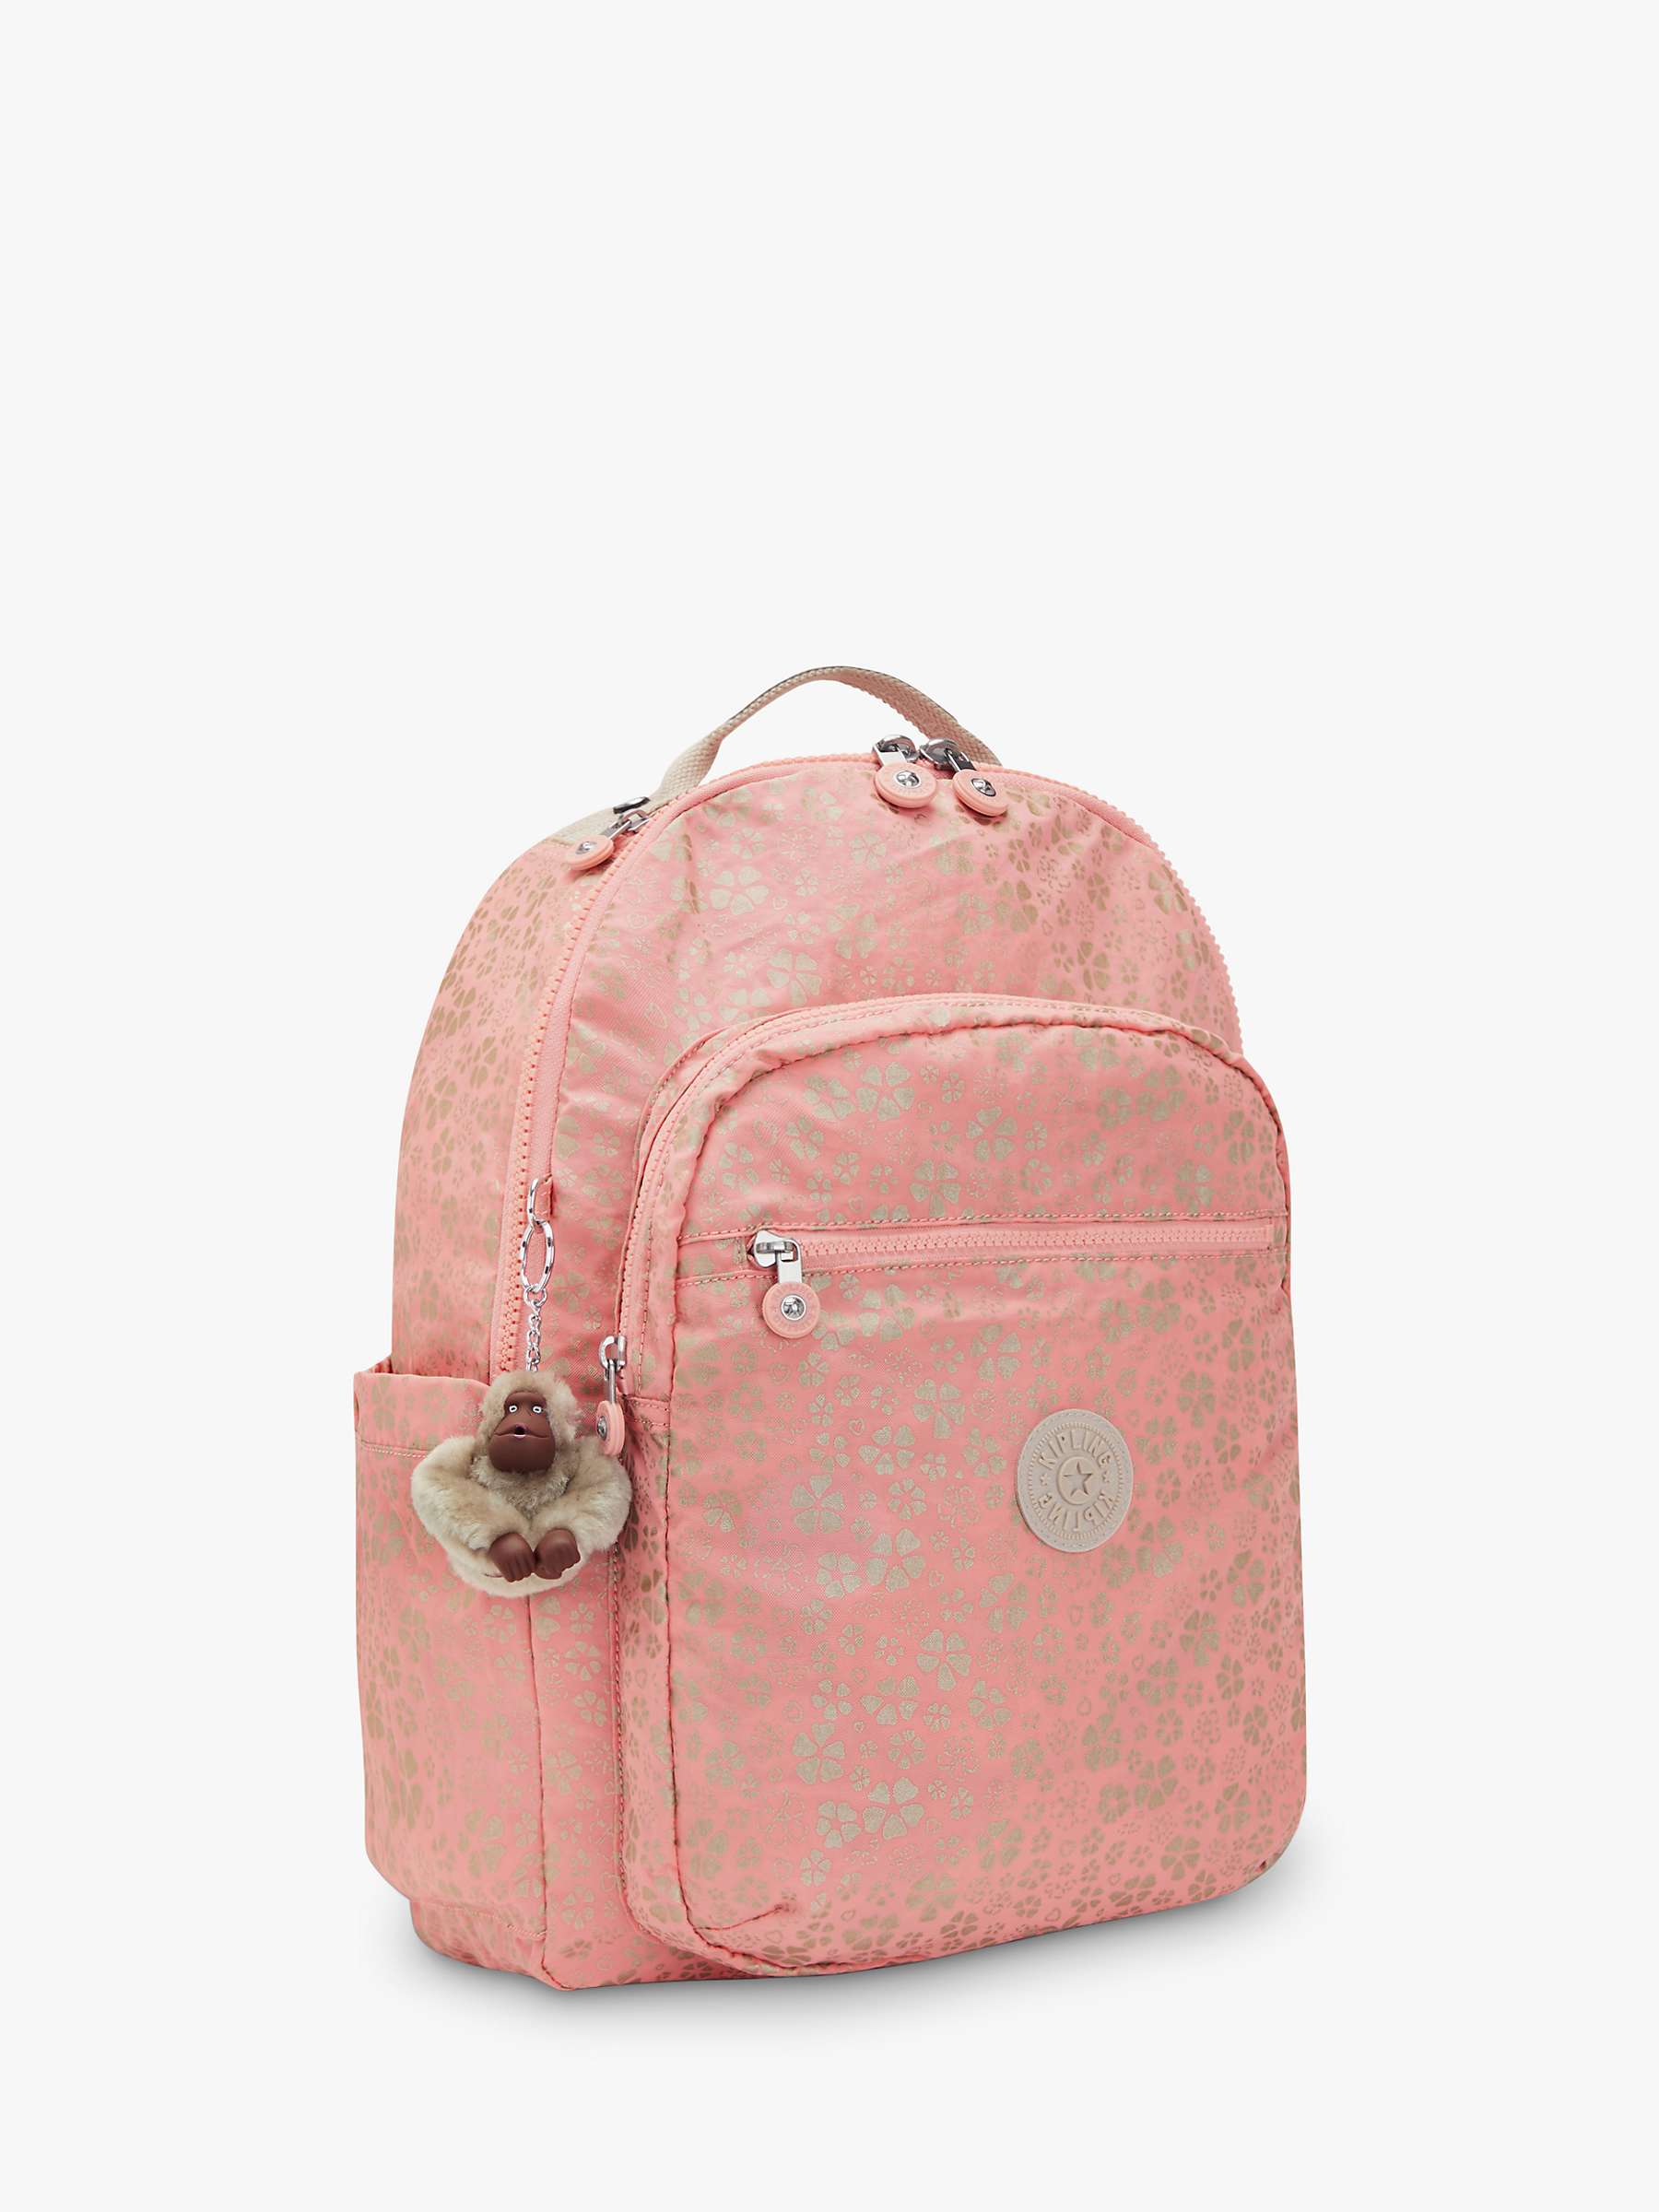 Buy Kipling Seoul Large Backpack, Sweet MetFloral Online at johnlewis.com